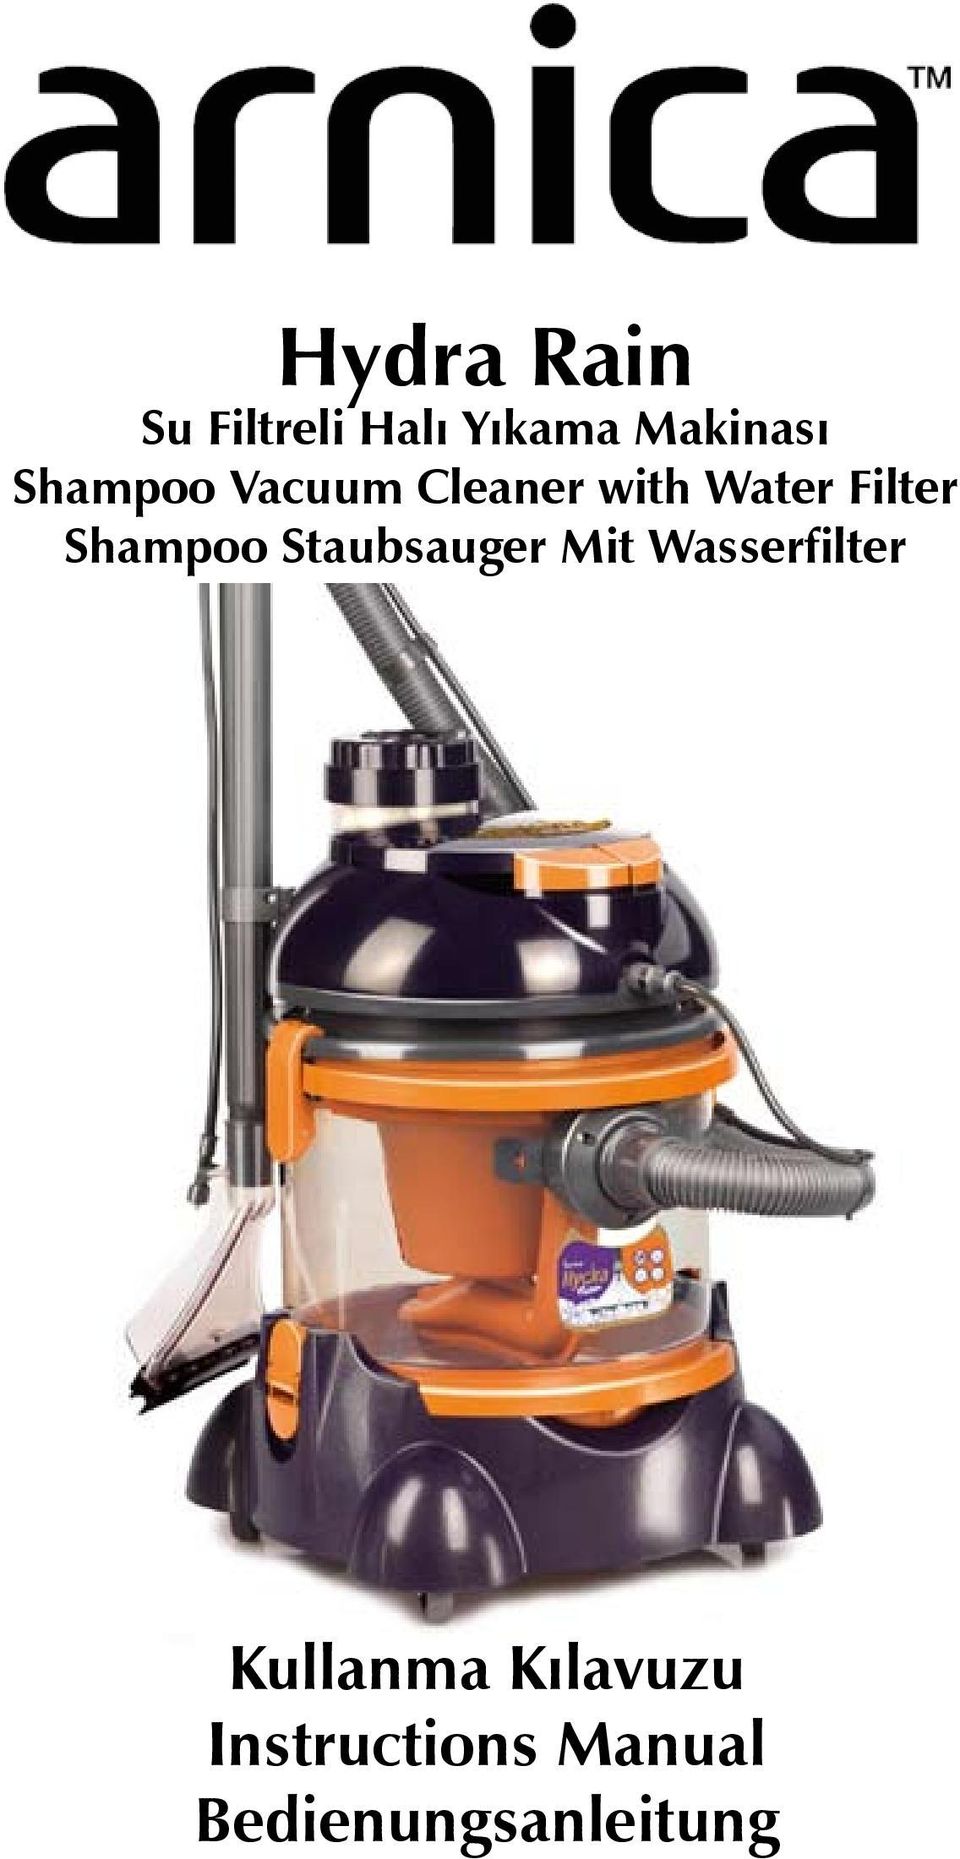 Hydra Rain. Su Filtreli Halı Yıkama Makinası Shampoo Vacuum Cleaner with  Water Filter Shampoo Staubsauger Mit Wasserfilter - PDF Free Download